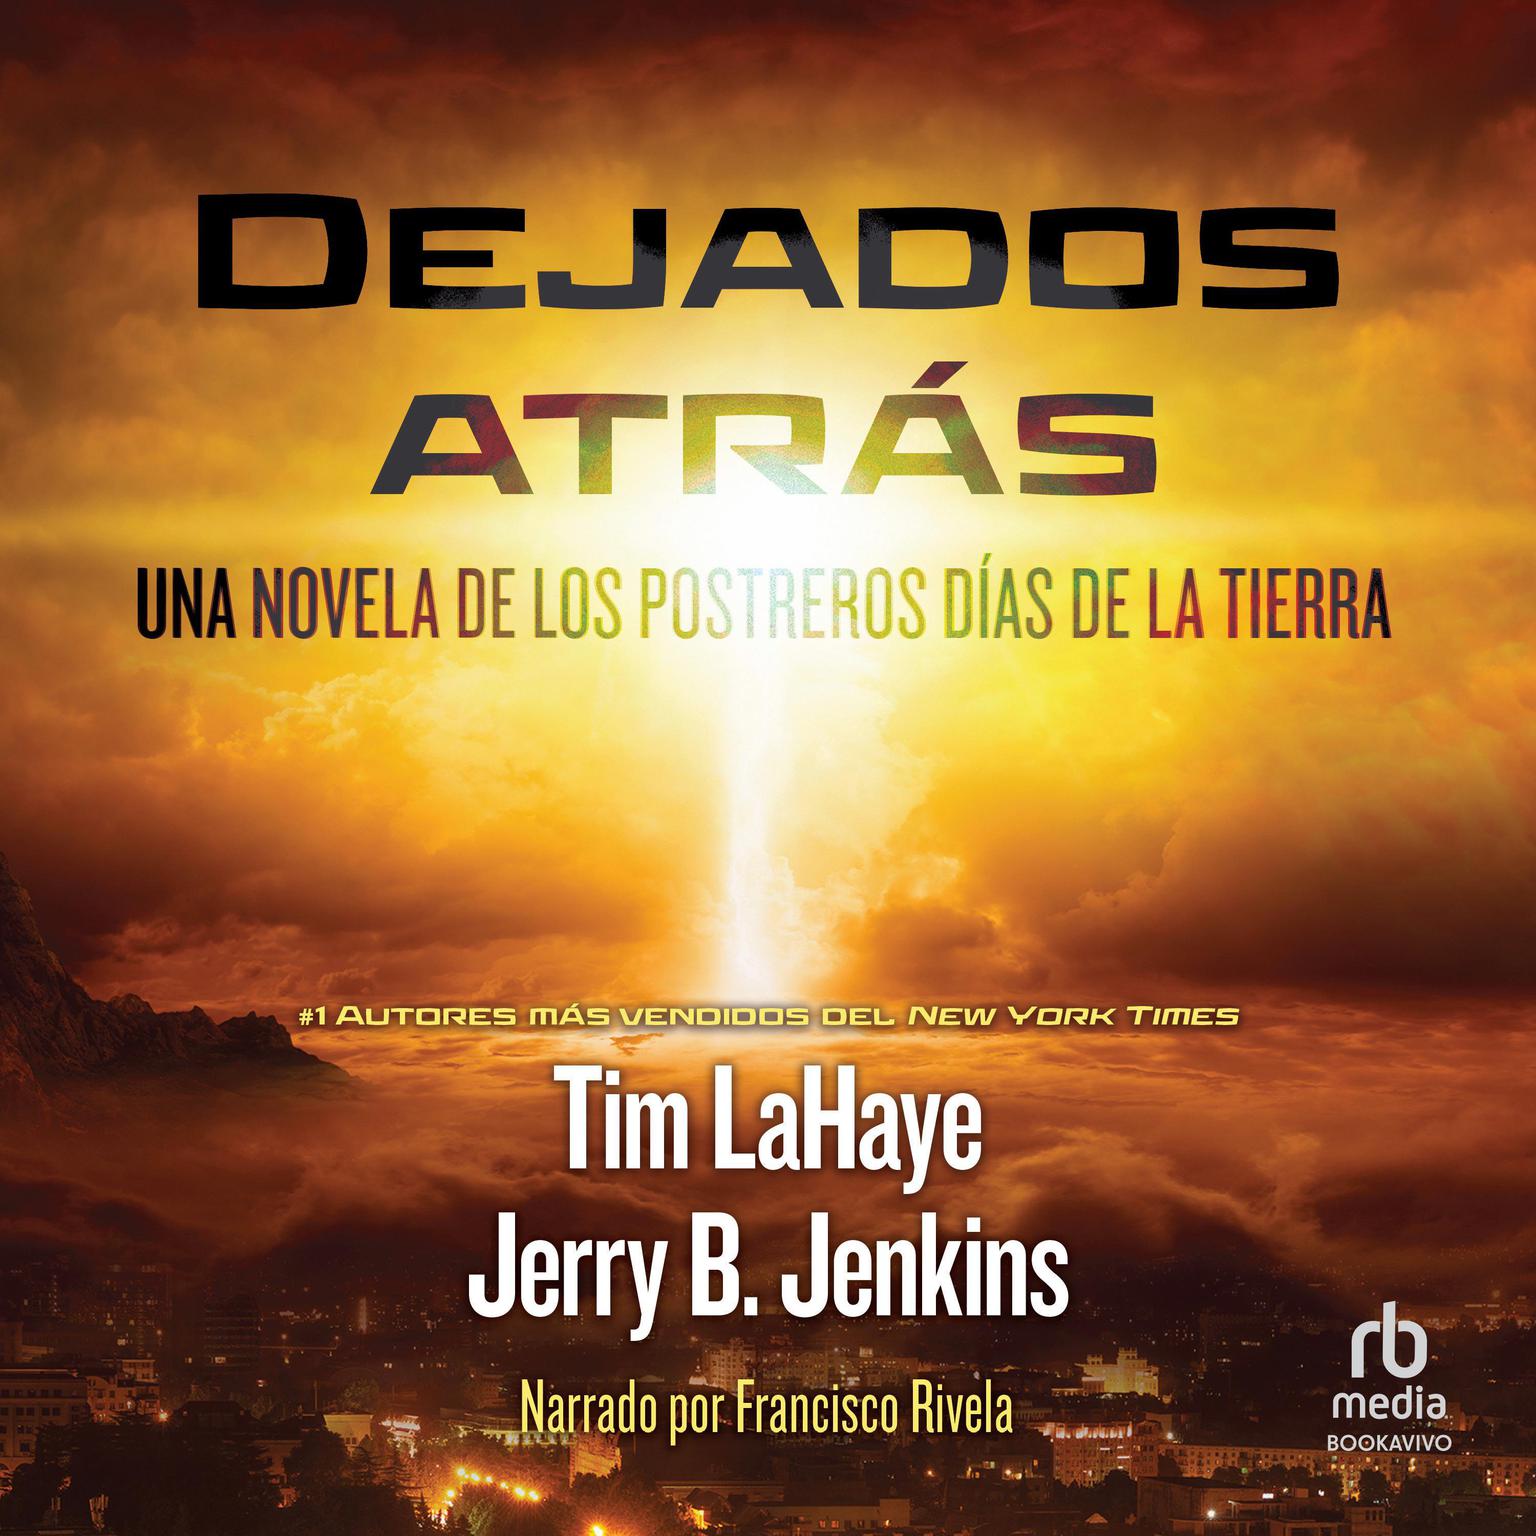 Dejados atras (Left Behind) Audiobook, by Tim LaHaye